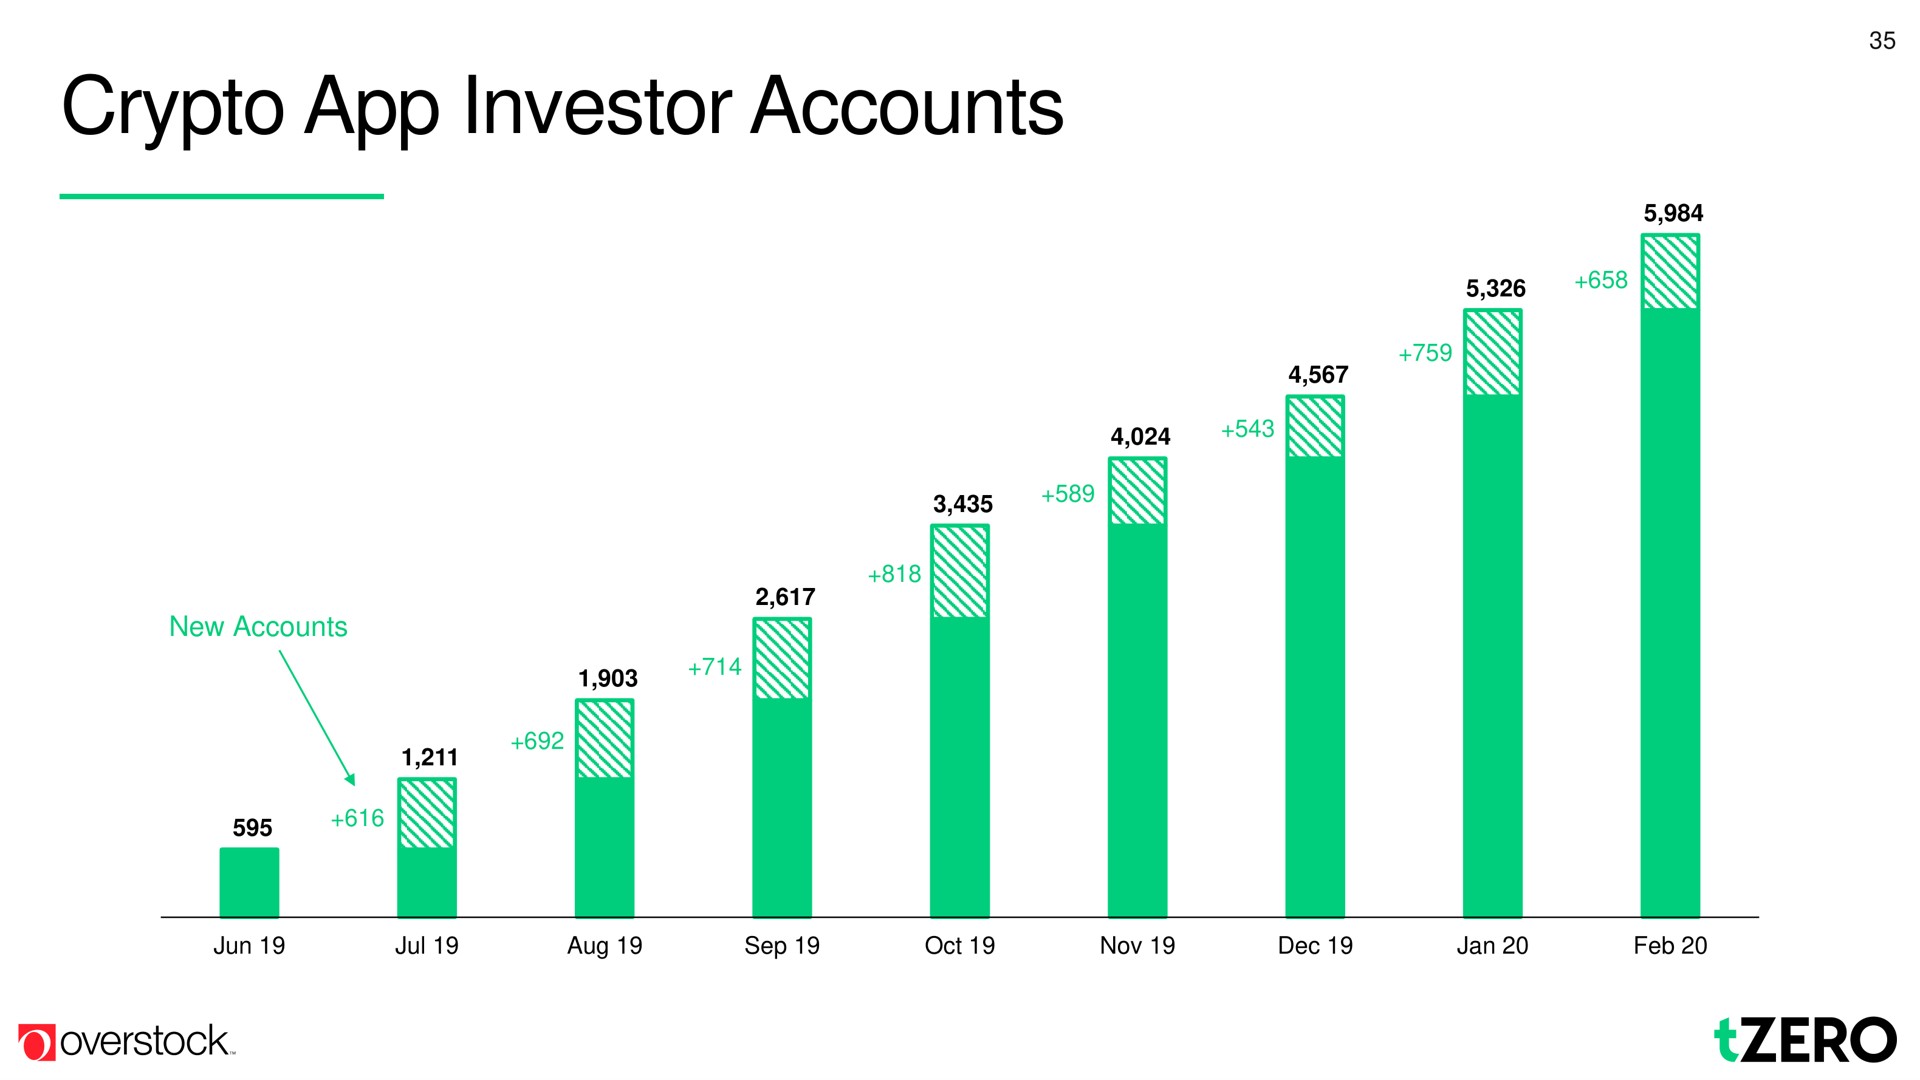 investor accounts | Overstock